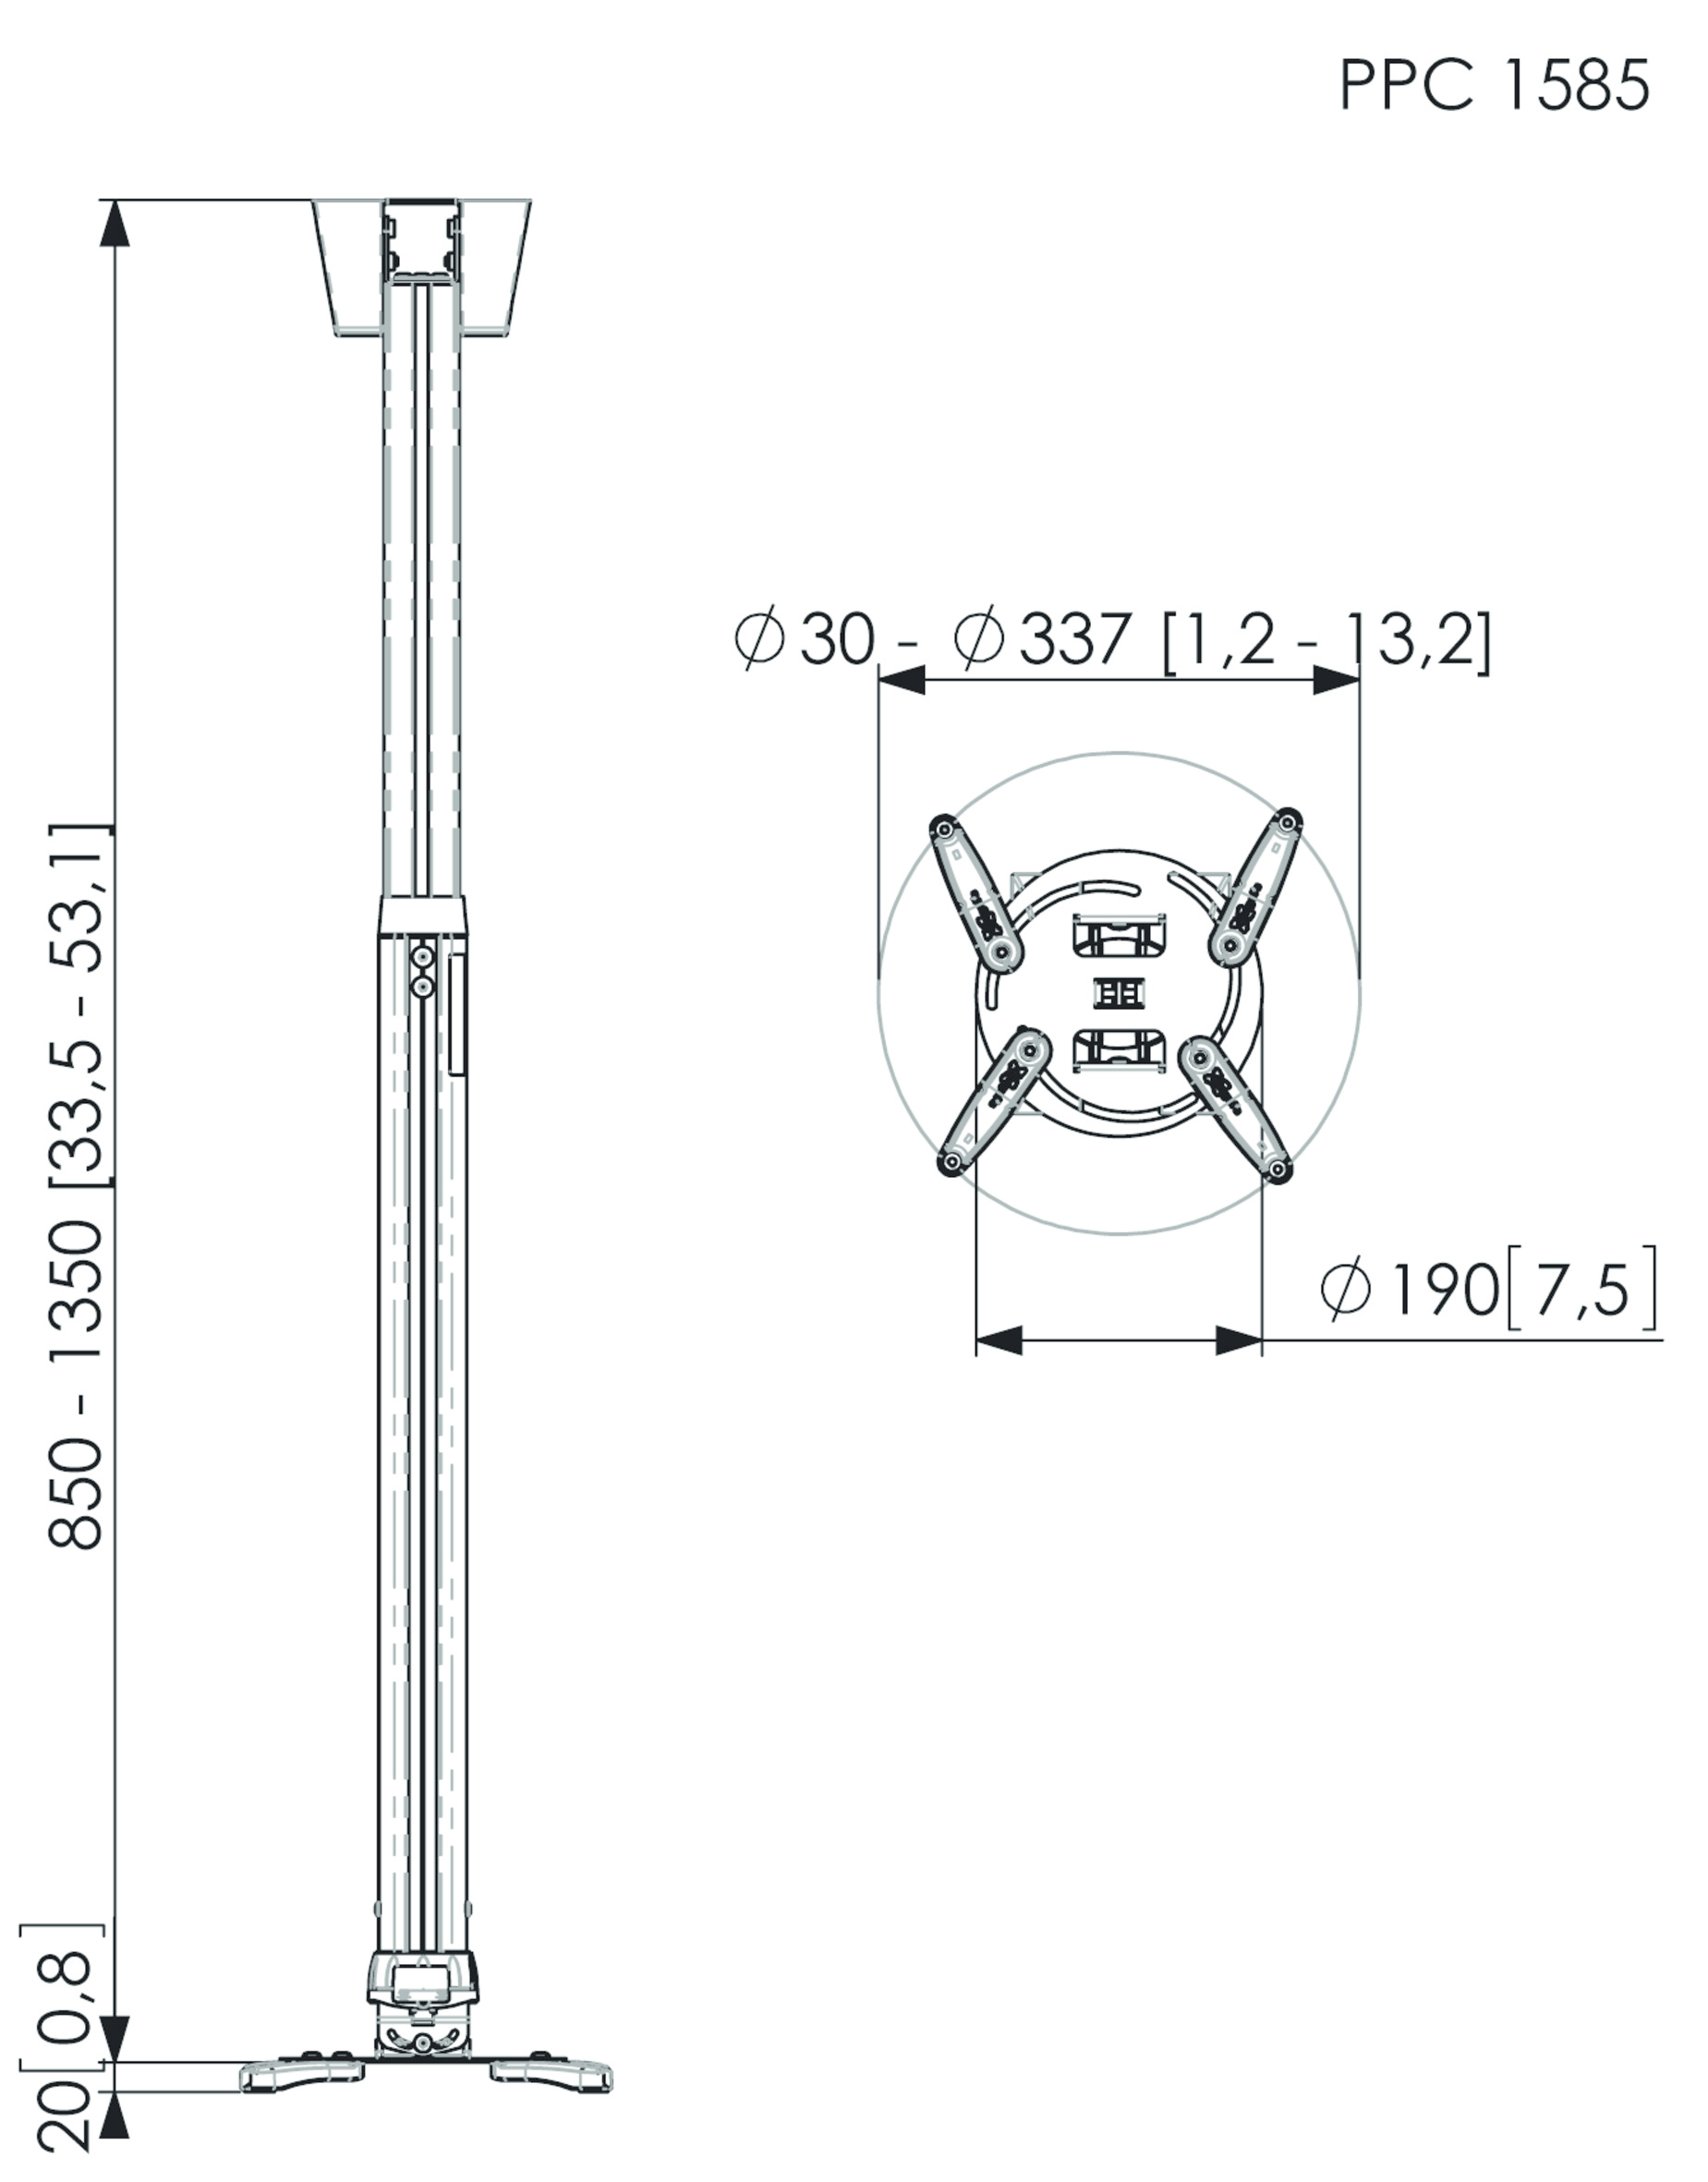 Vogel's PPC 1585 - Befestigungskit (Deckenmontage, Anschlussplatte, Teleskopstange) für Projektor